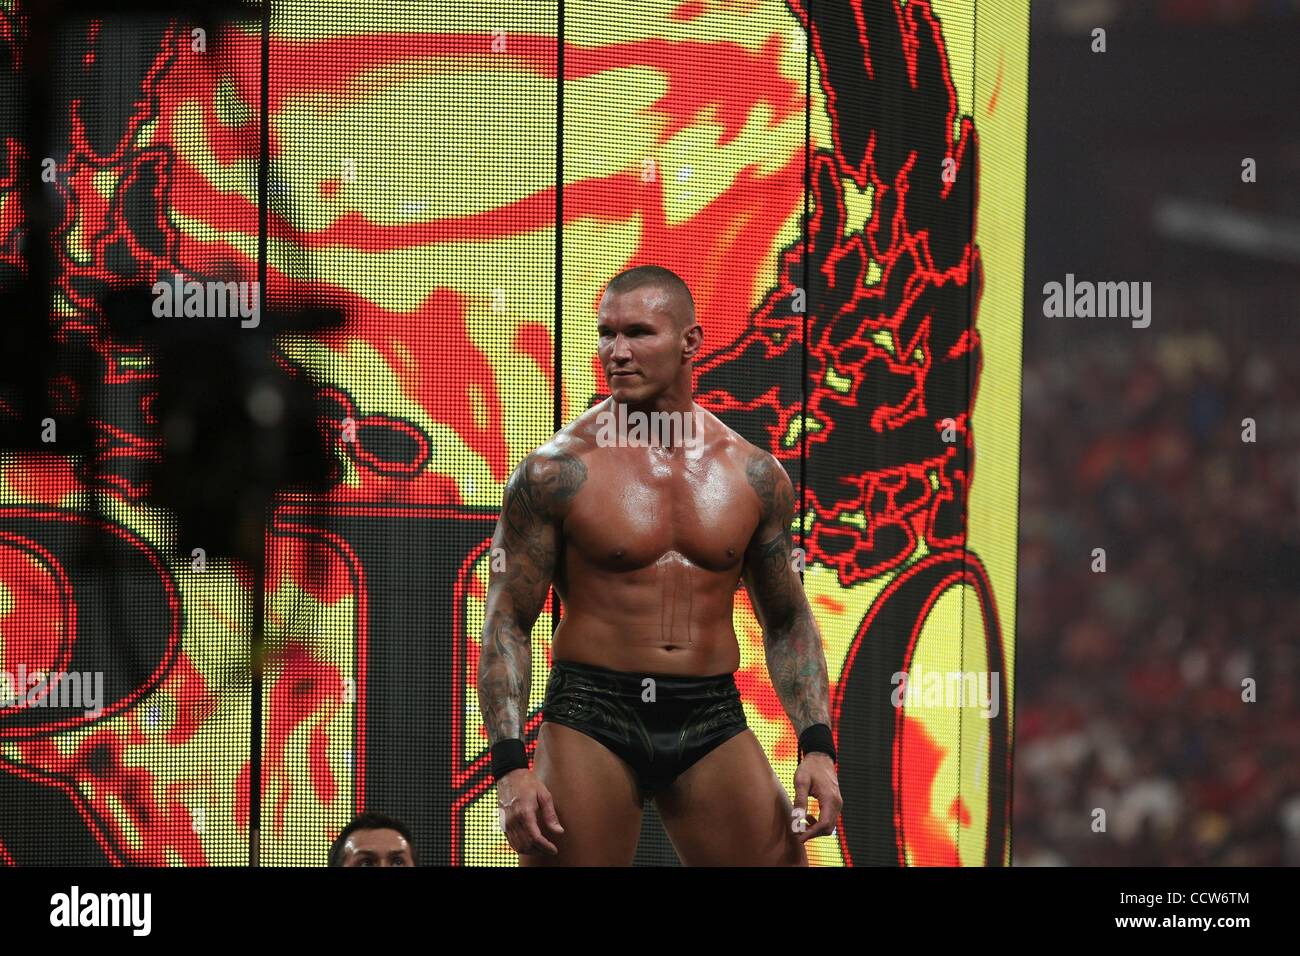 Randy Orton photo shoot outtakes: photos